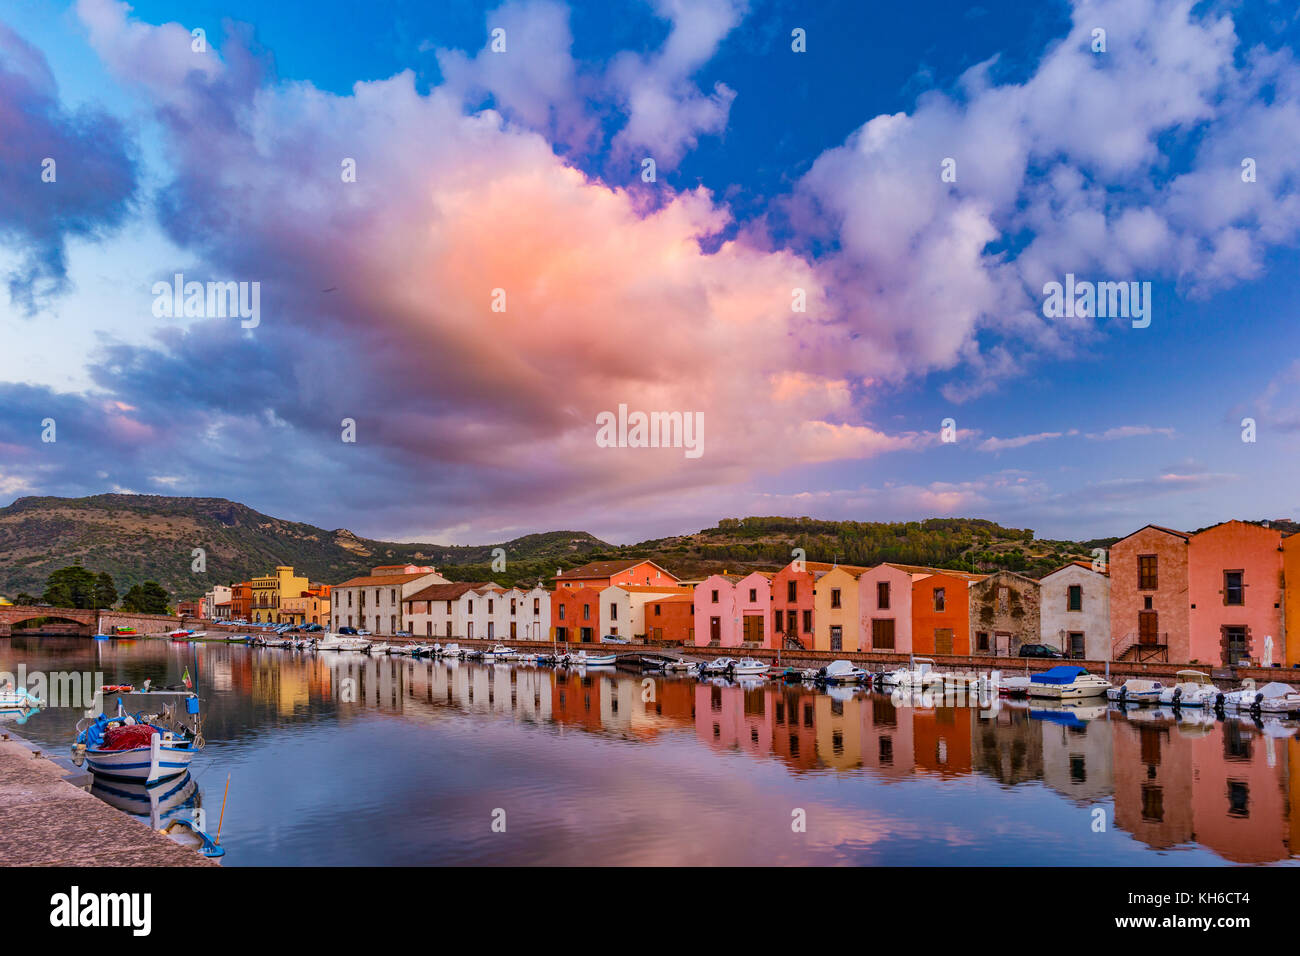 Bosa, Gemeinde in der Provinz von Oristano, Region Sardinien, Italien. schönen und bunten Foto von alter Architektur. Stockfoto